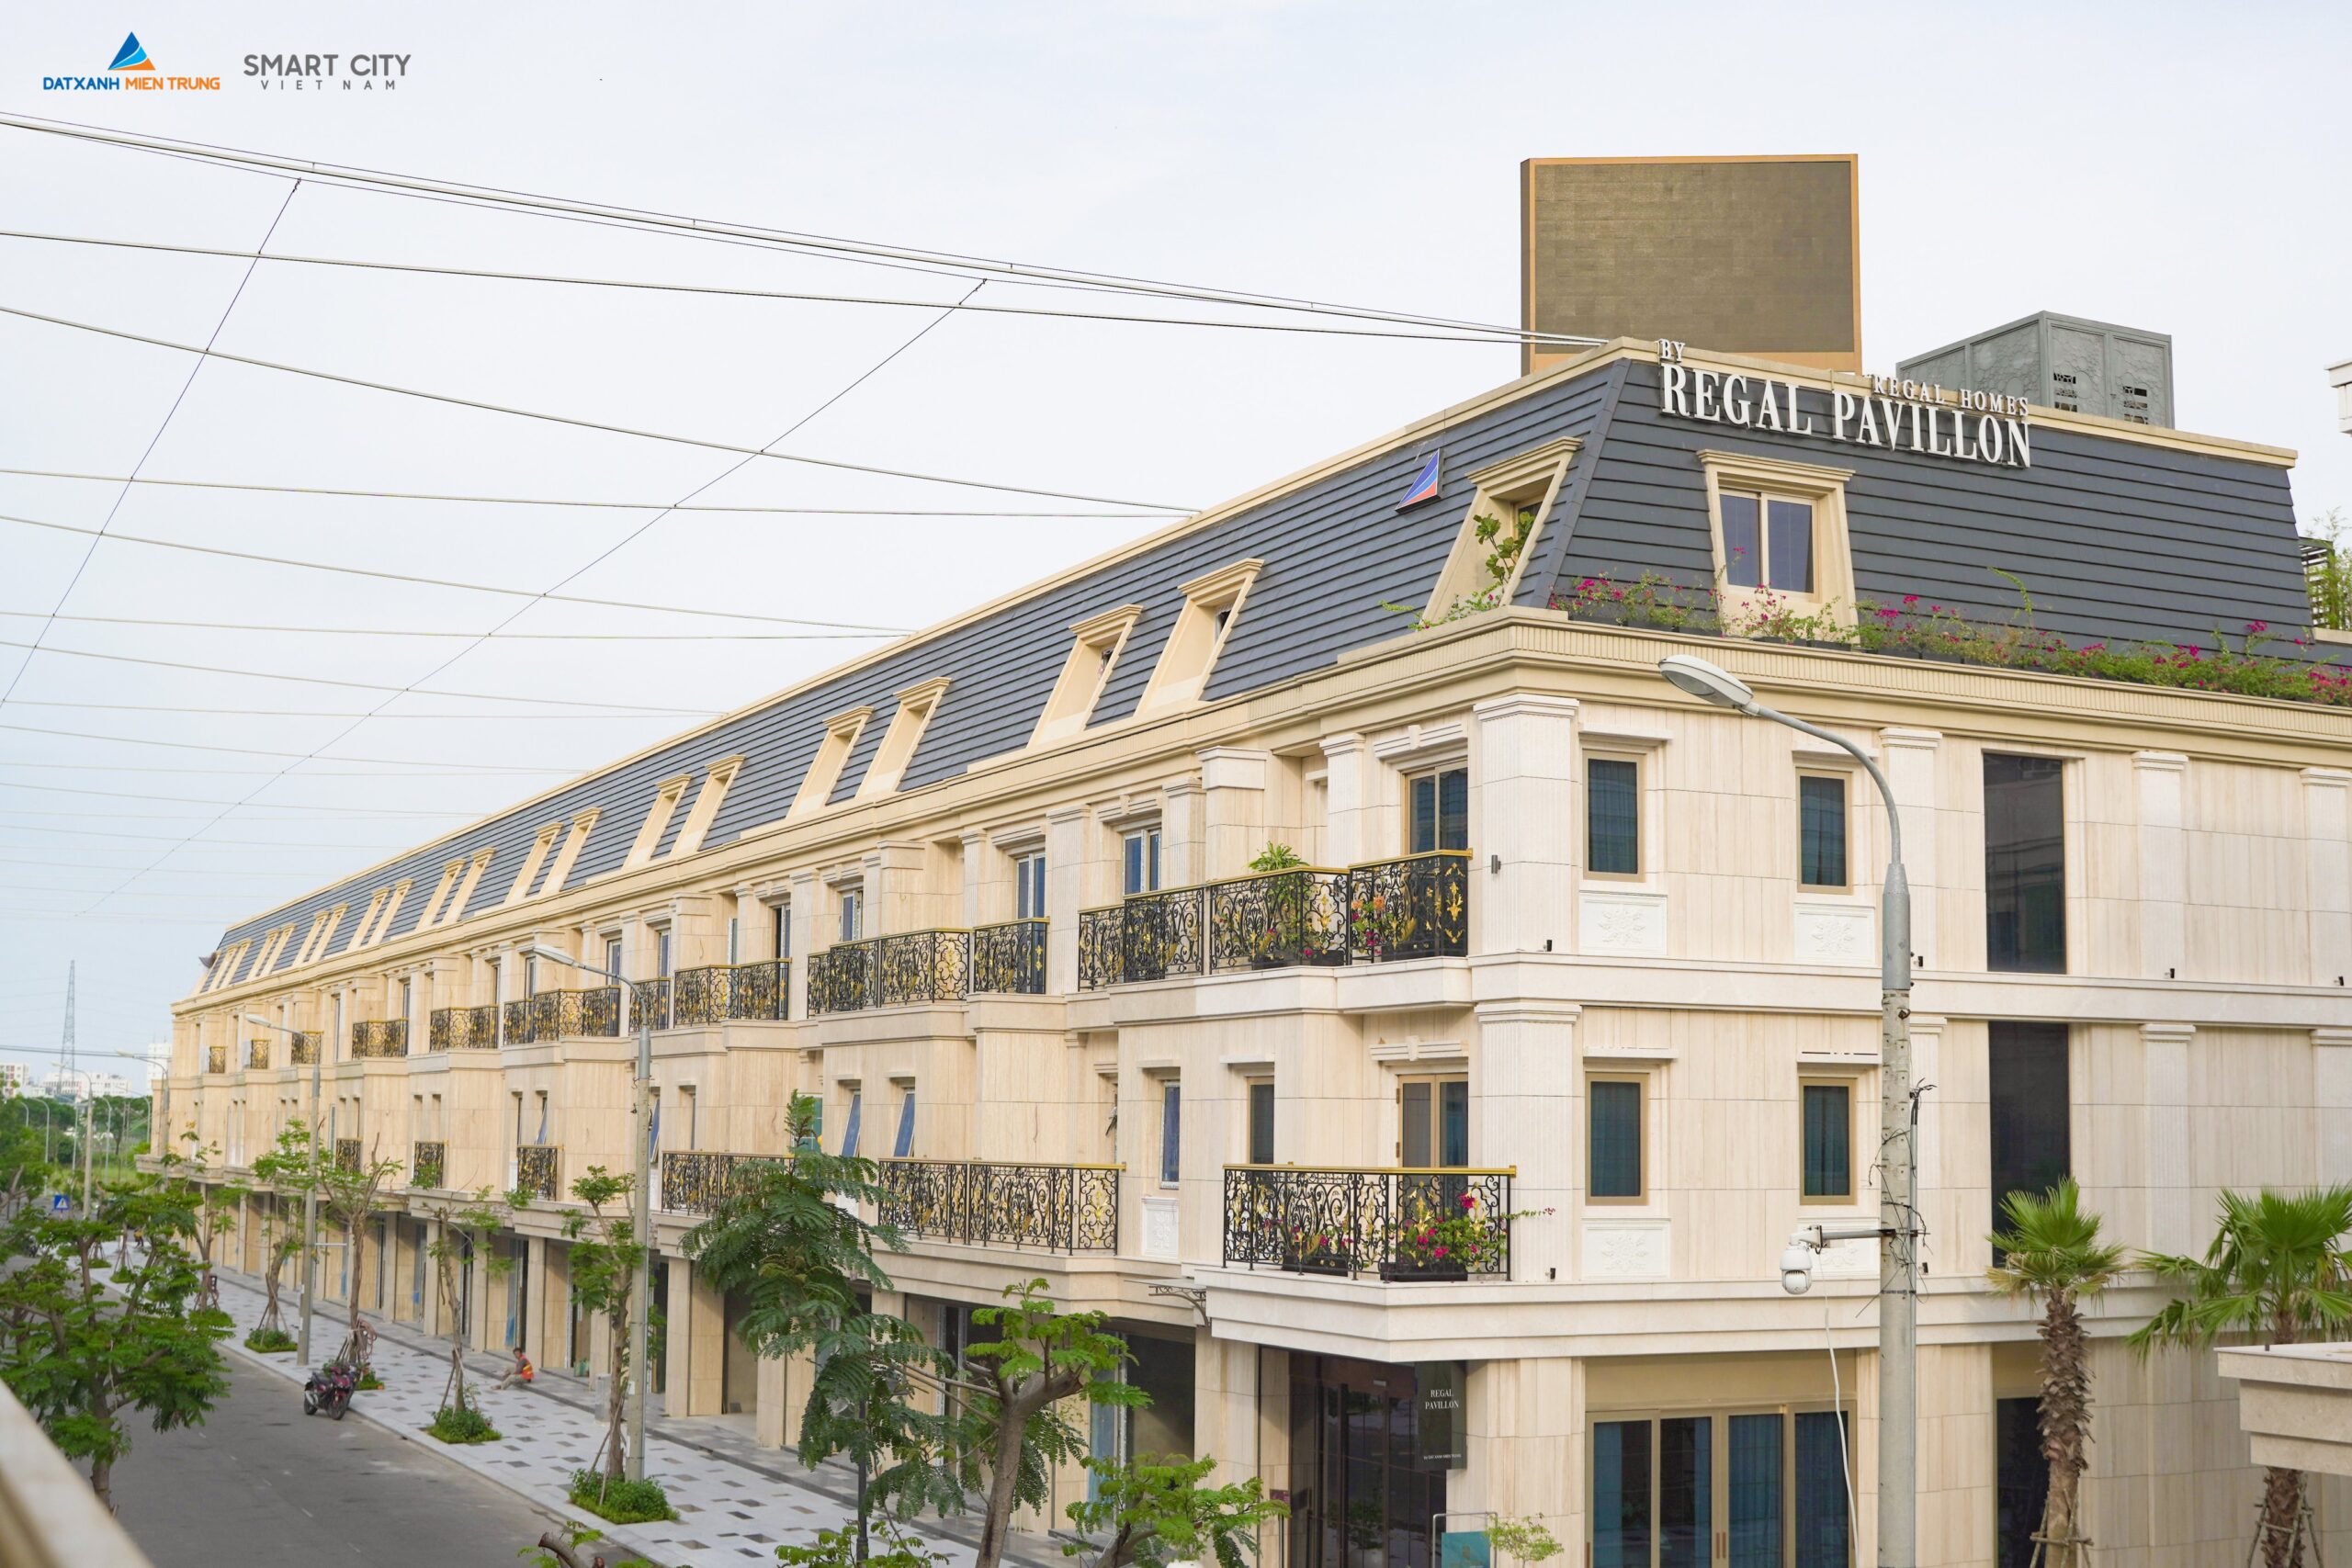 Regal Pavillon – giá trị bền vững của dự án mang tầm quốc tế - Viet Nam Smart City